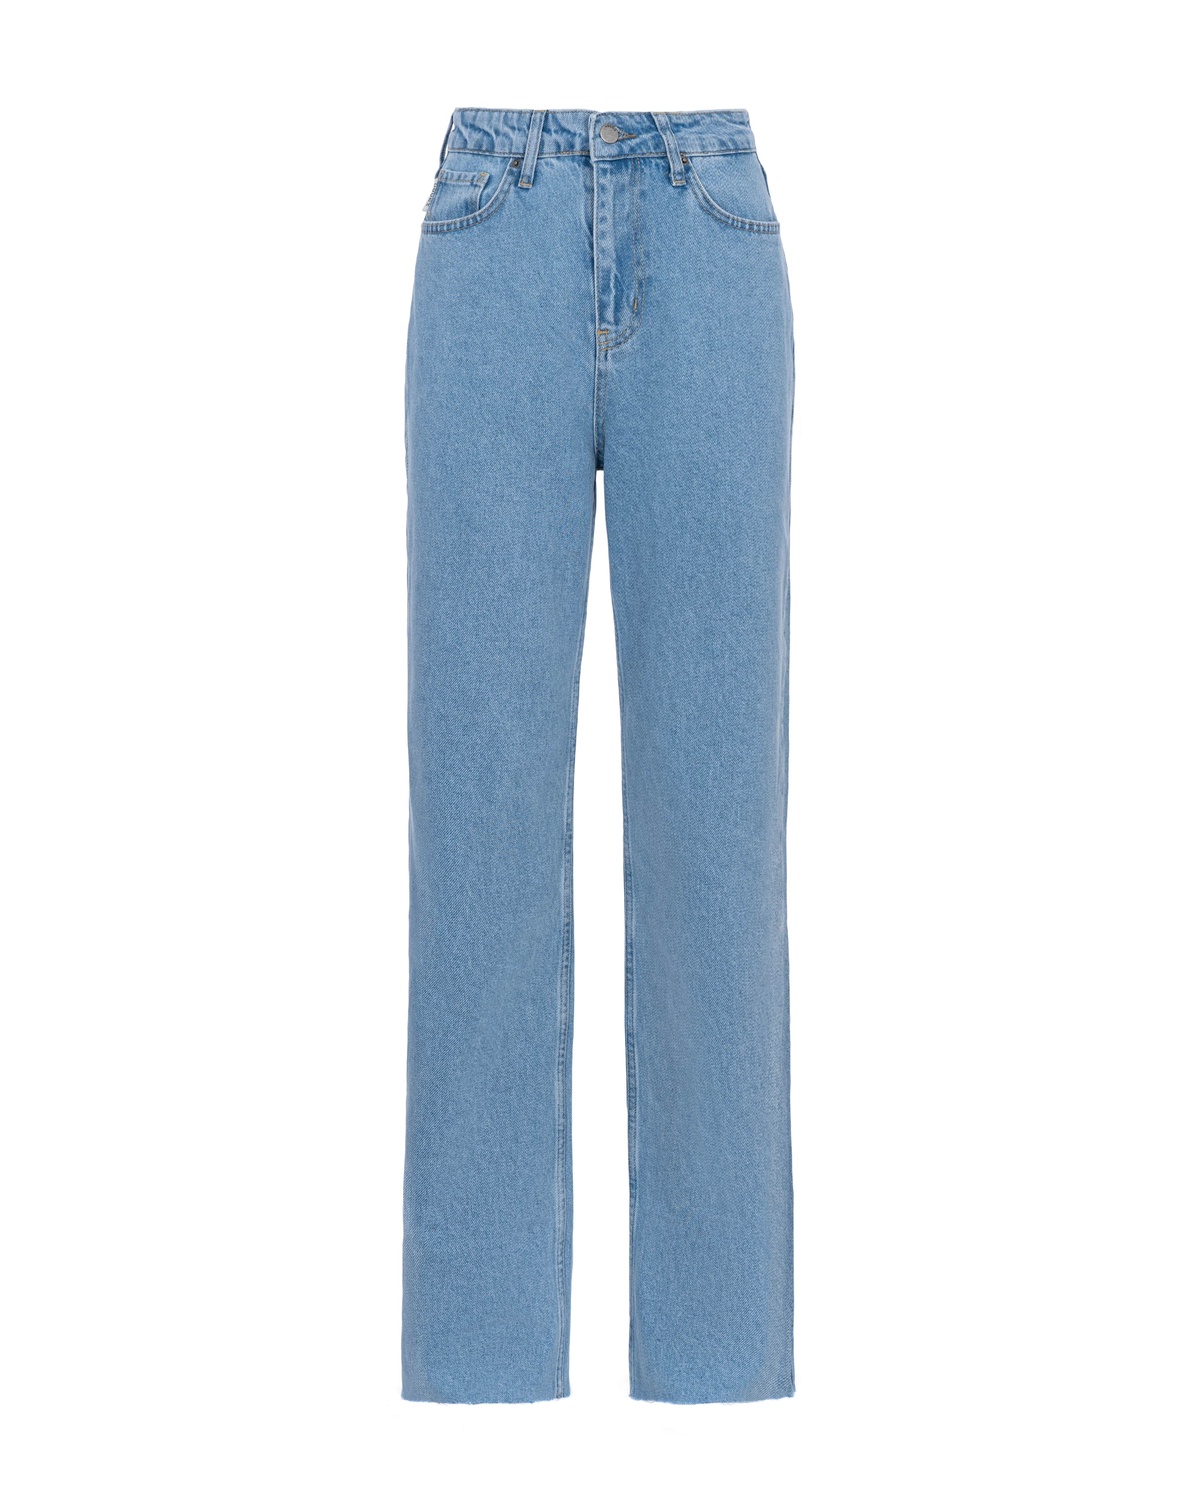 Straight Cut BASIC Jeans with a High Waist